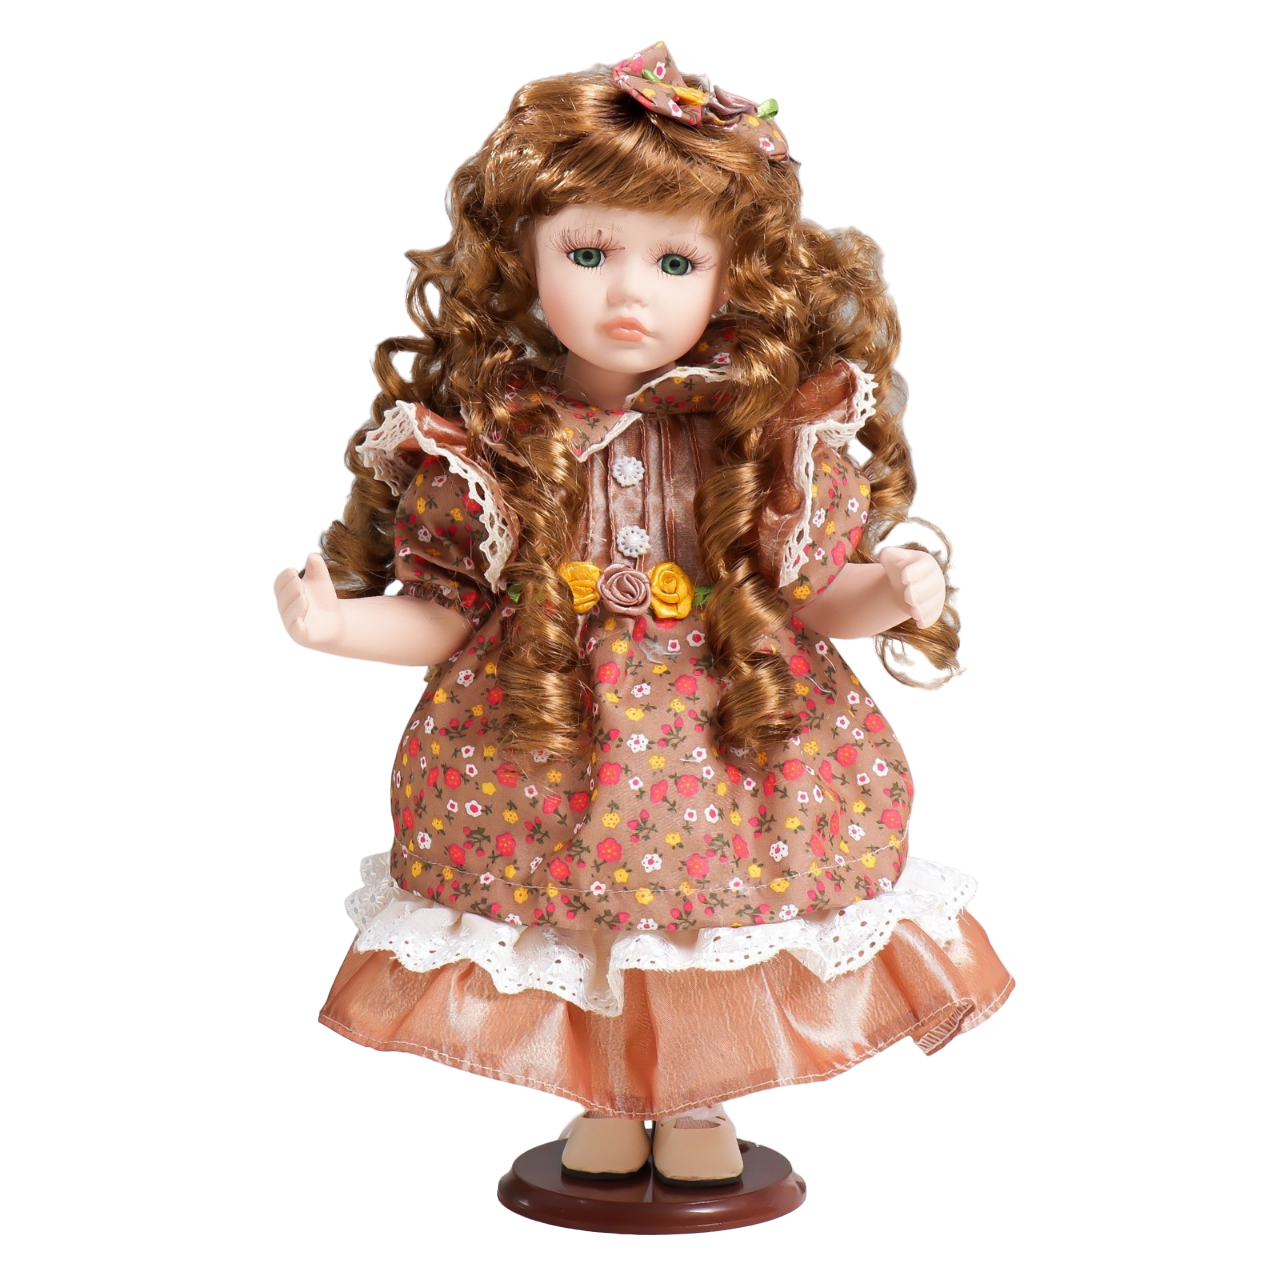 Кукла коллекционная керамика Тося в платье с мелкими цветочками, с бантом в волосах 30 см кукла коллекционная керамика танечка в платье а морской волны и чепчике 30 см